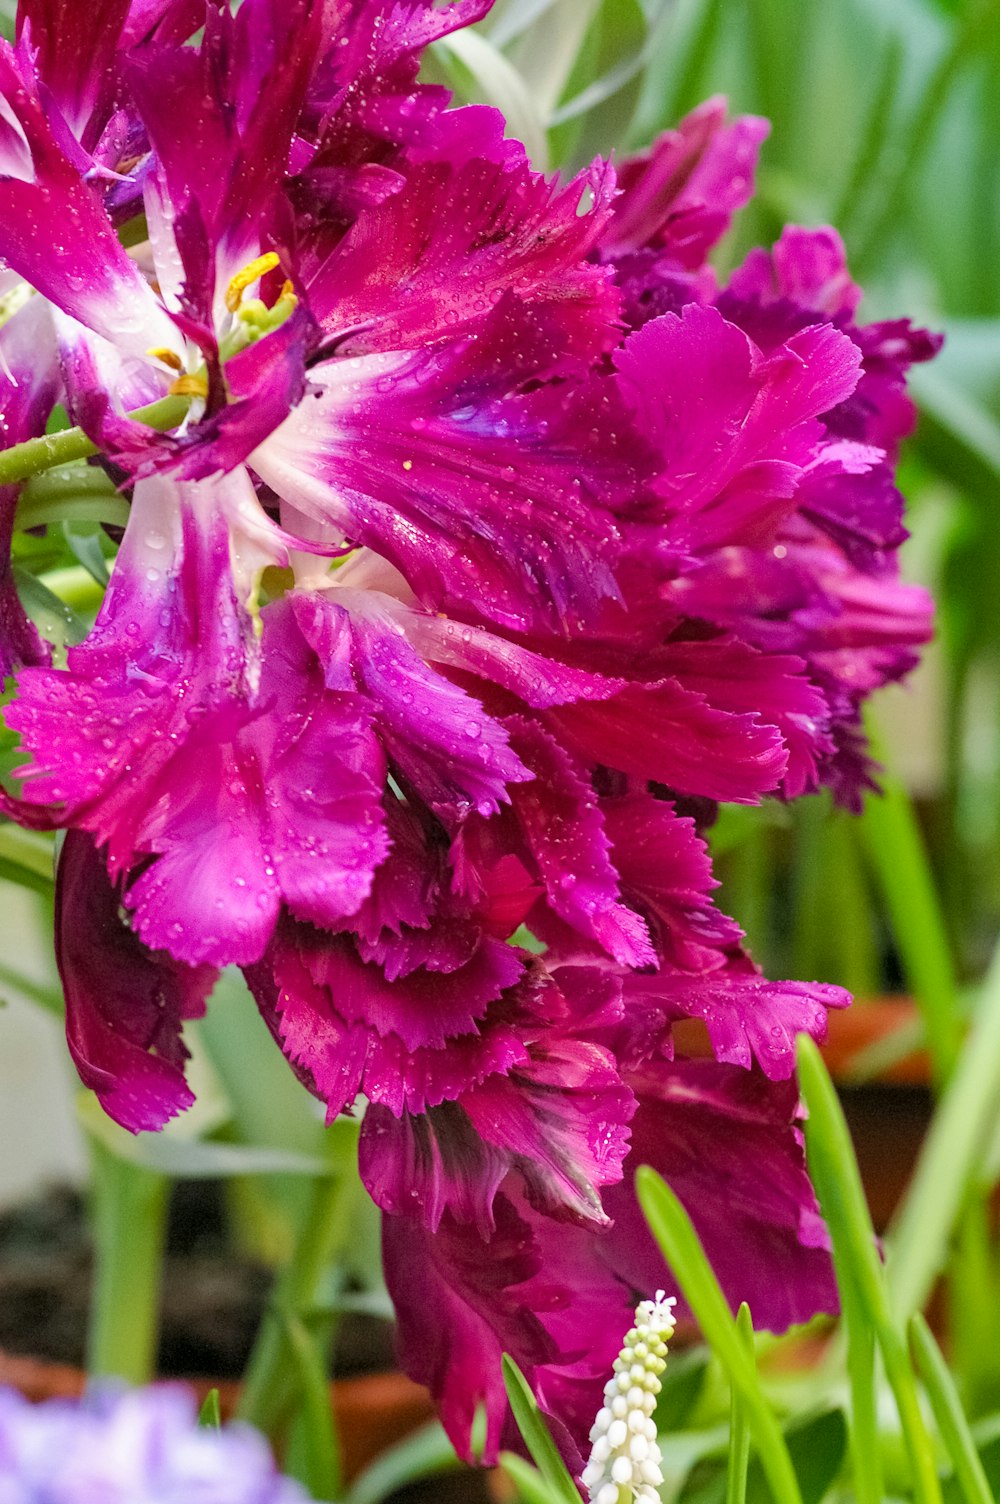 um close up de uma flor roxa com gotículas de água sobre ela